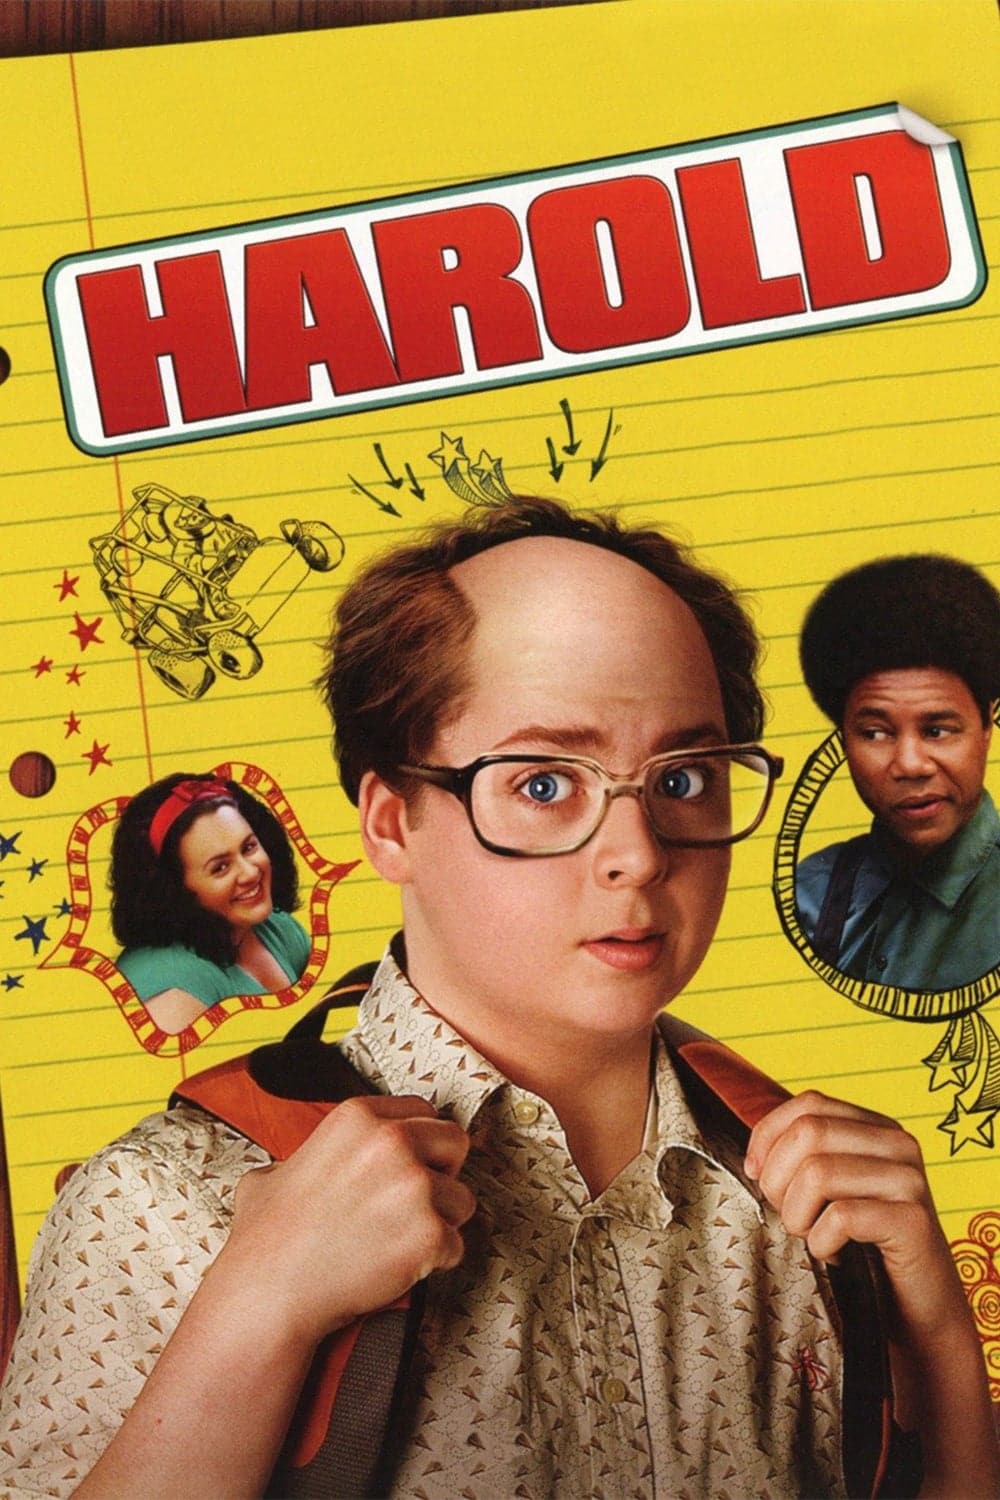 Plakat von "Harold"